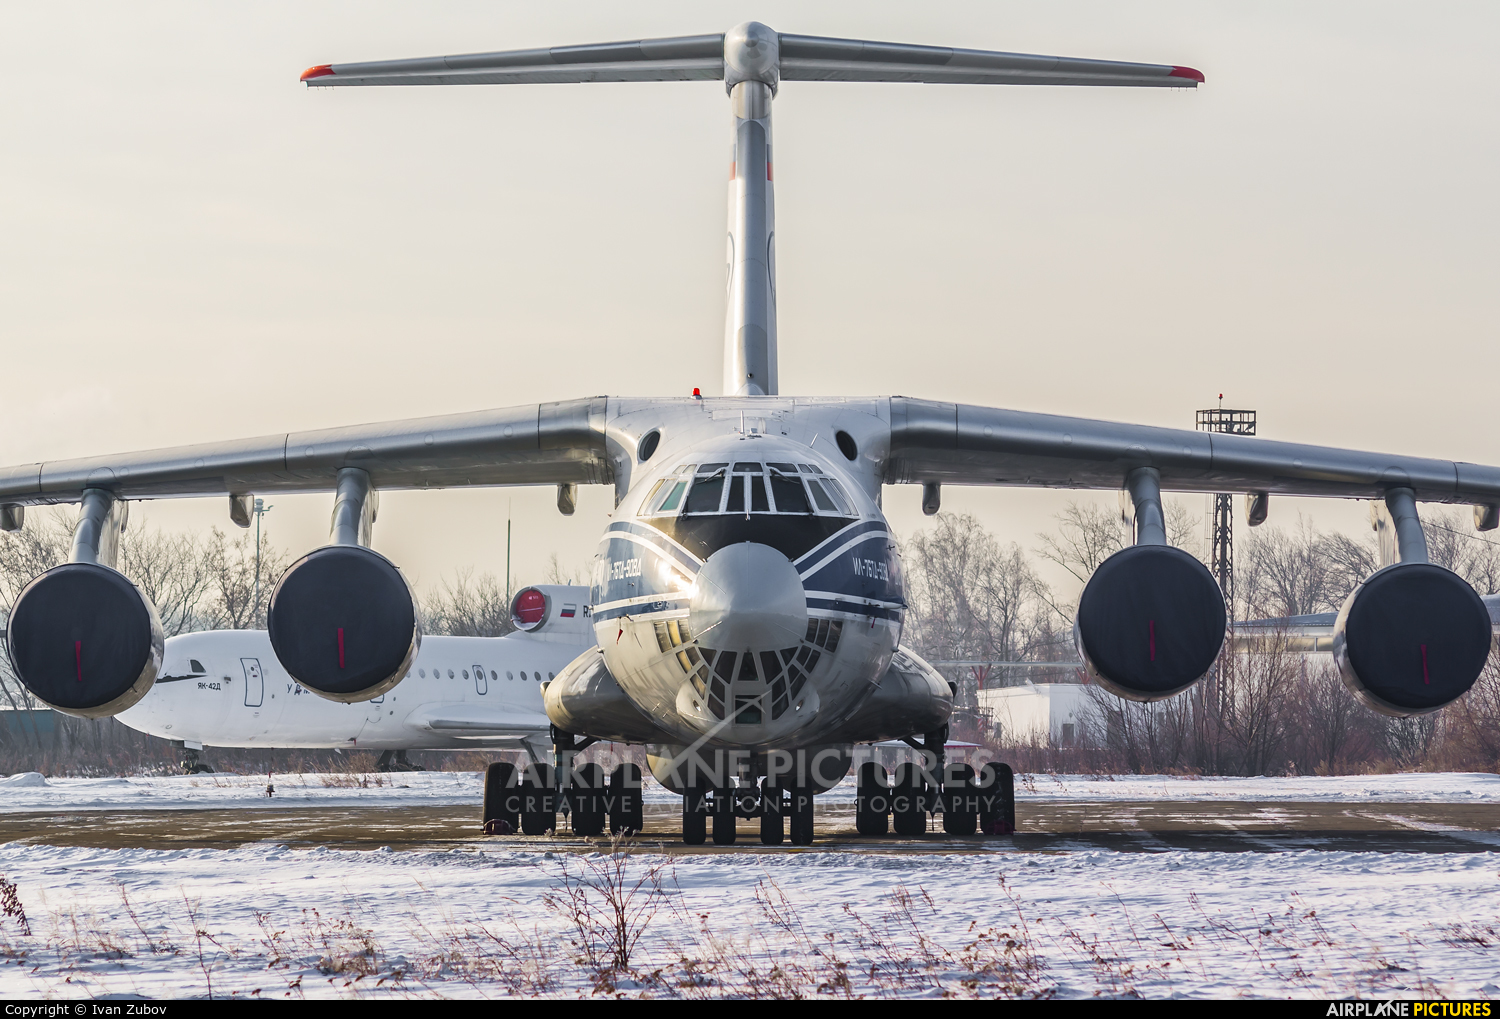 Volga Dnepr Airlines RA-76951 aircraft at Chelyabinsk